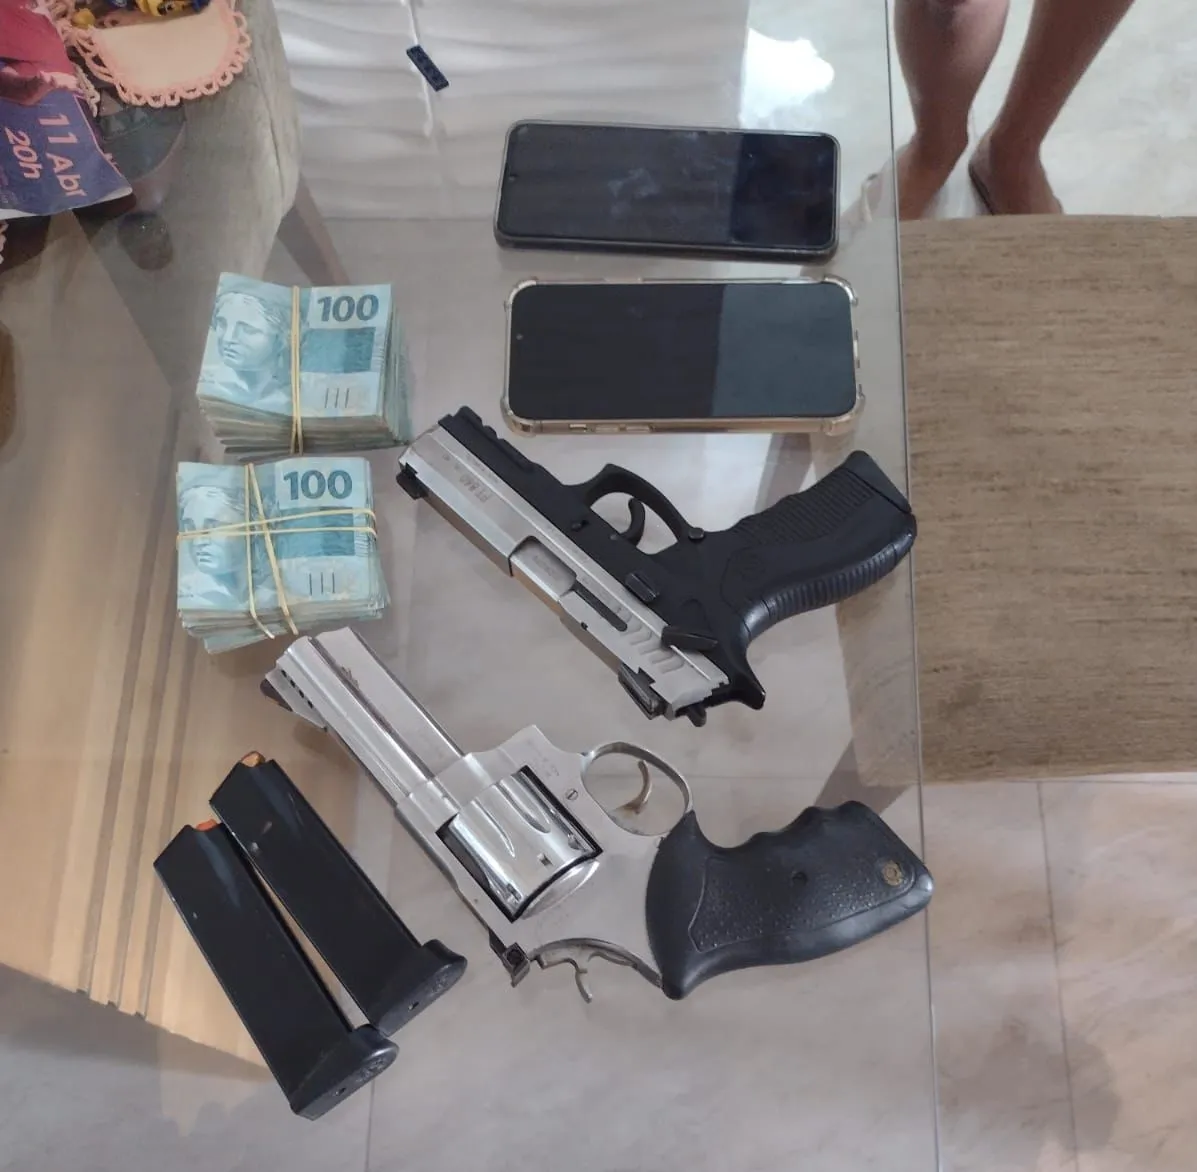 Armas e dinheiro foram encontrados em um dos endereços